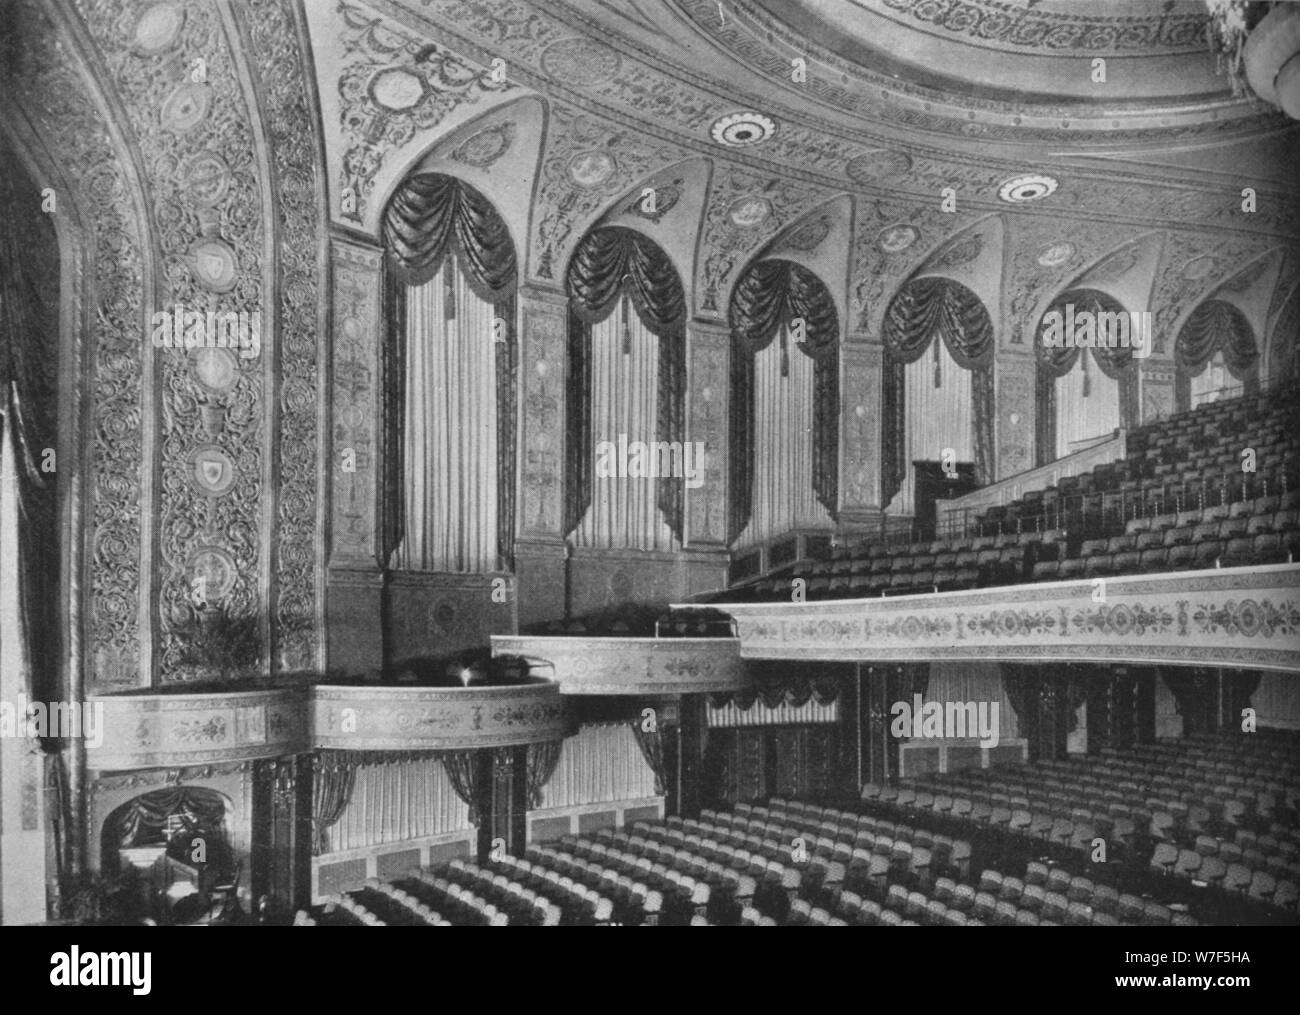 Aula der Earle Theater, Washington DC, 1925. Künstler: unbekannt. Stockfoto